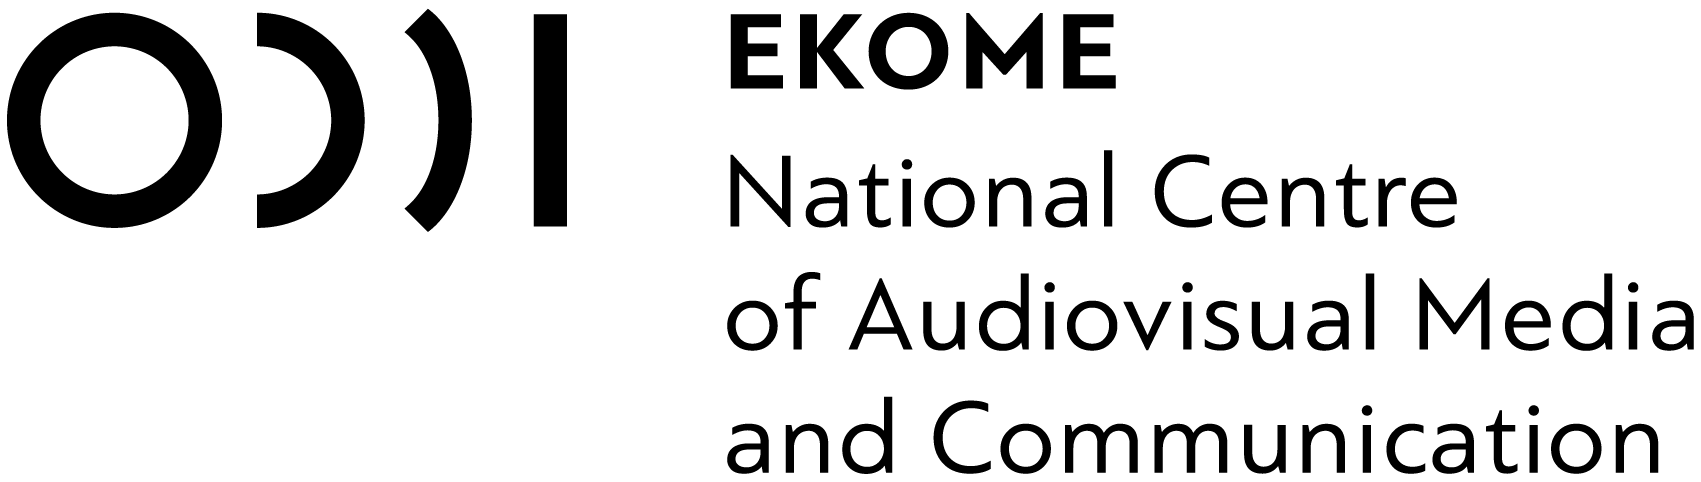 ekome-logo-en-black-horizontal-triple-1